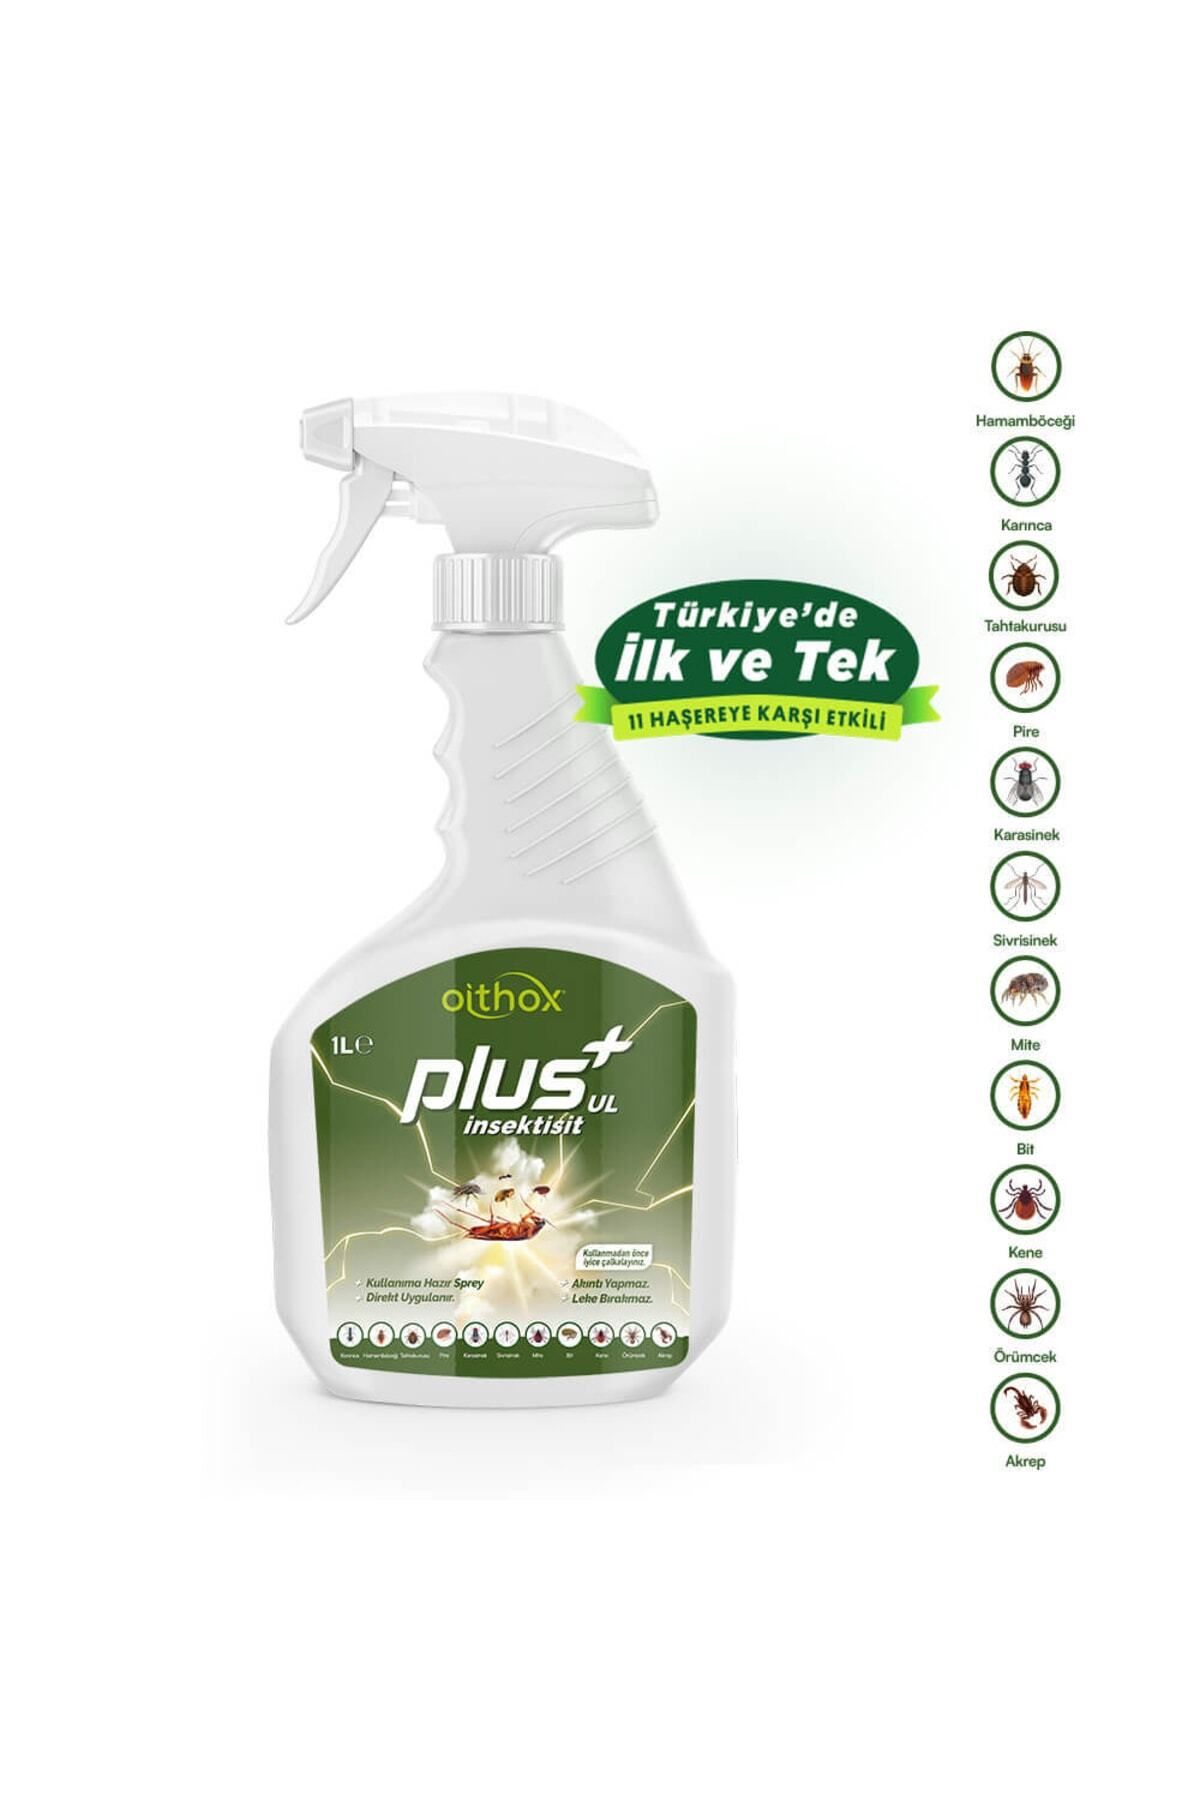 Oithox Plus Ul Insektisit Uyuz, Böcek, Tahta Kurusu, Pire, Bit, Mite, Hamamböceği Ilacı 1 Lt